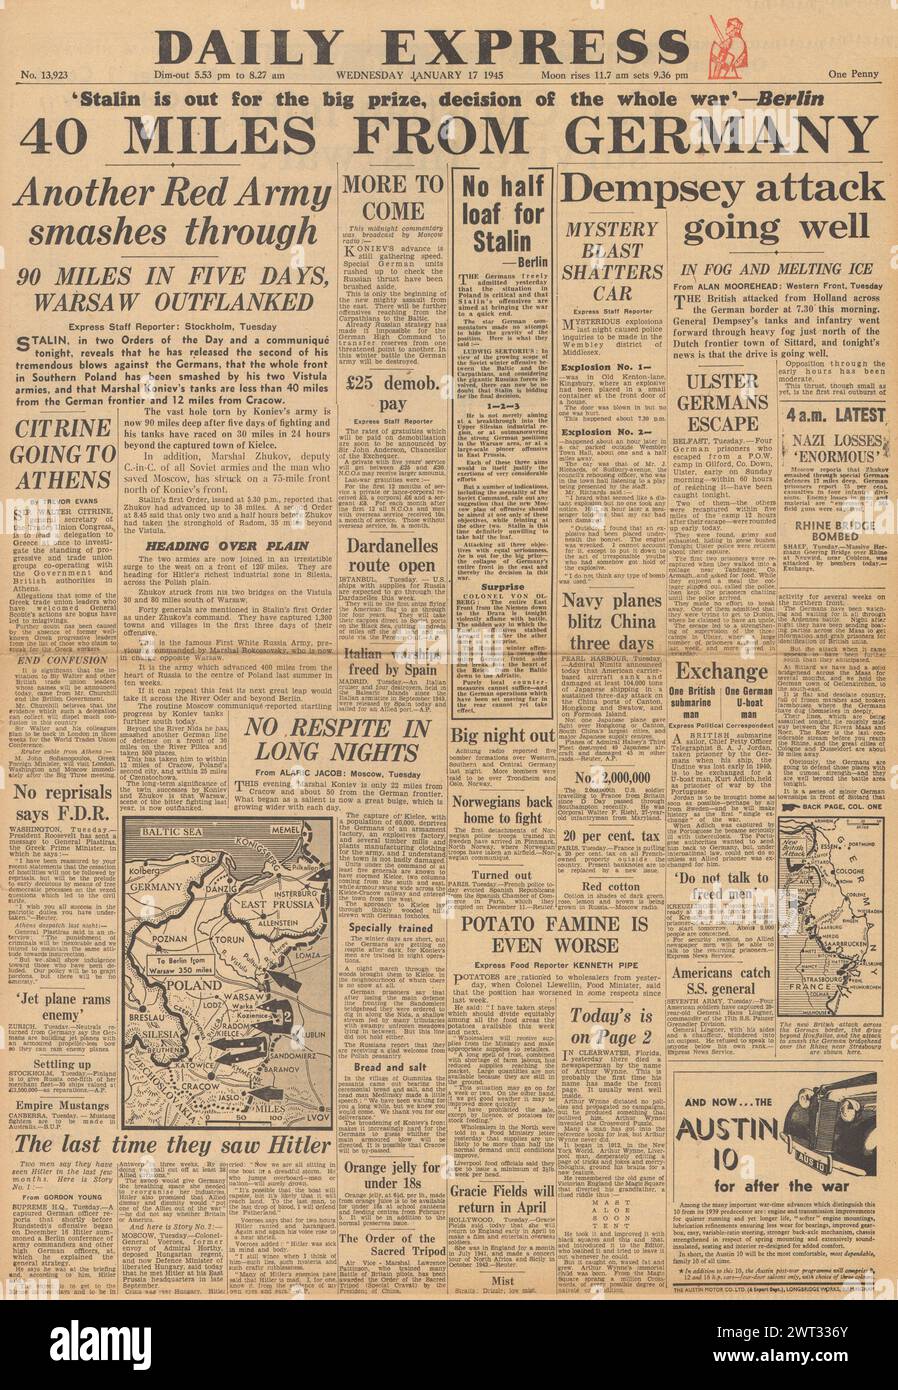 1945 la prima pagina del Daily Express riportava l'avanzata dell'Armata Rossa in Polonia, la Battaglia delle Ardenne e le forze britanniche avanzavano in Olanda fino al confine tedesco Foto Stock